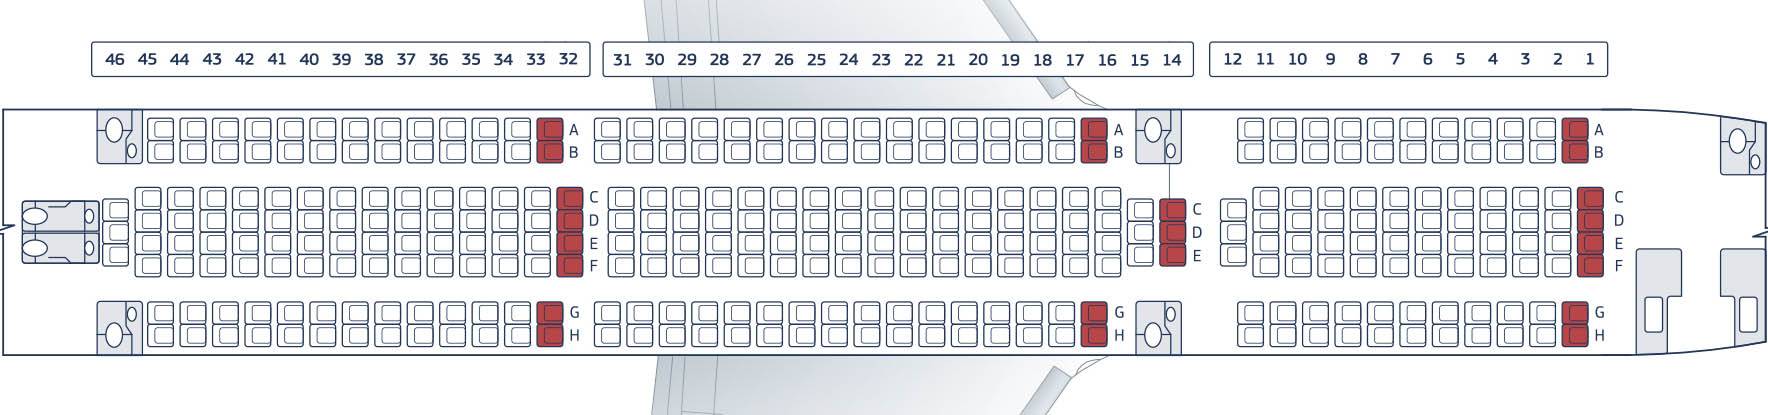 Боинг 767 300 - описание, схема салона и лучшие места